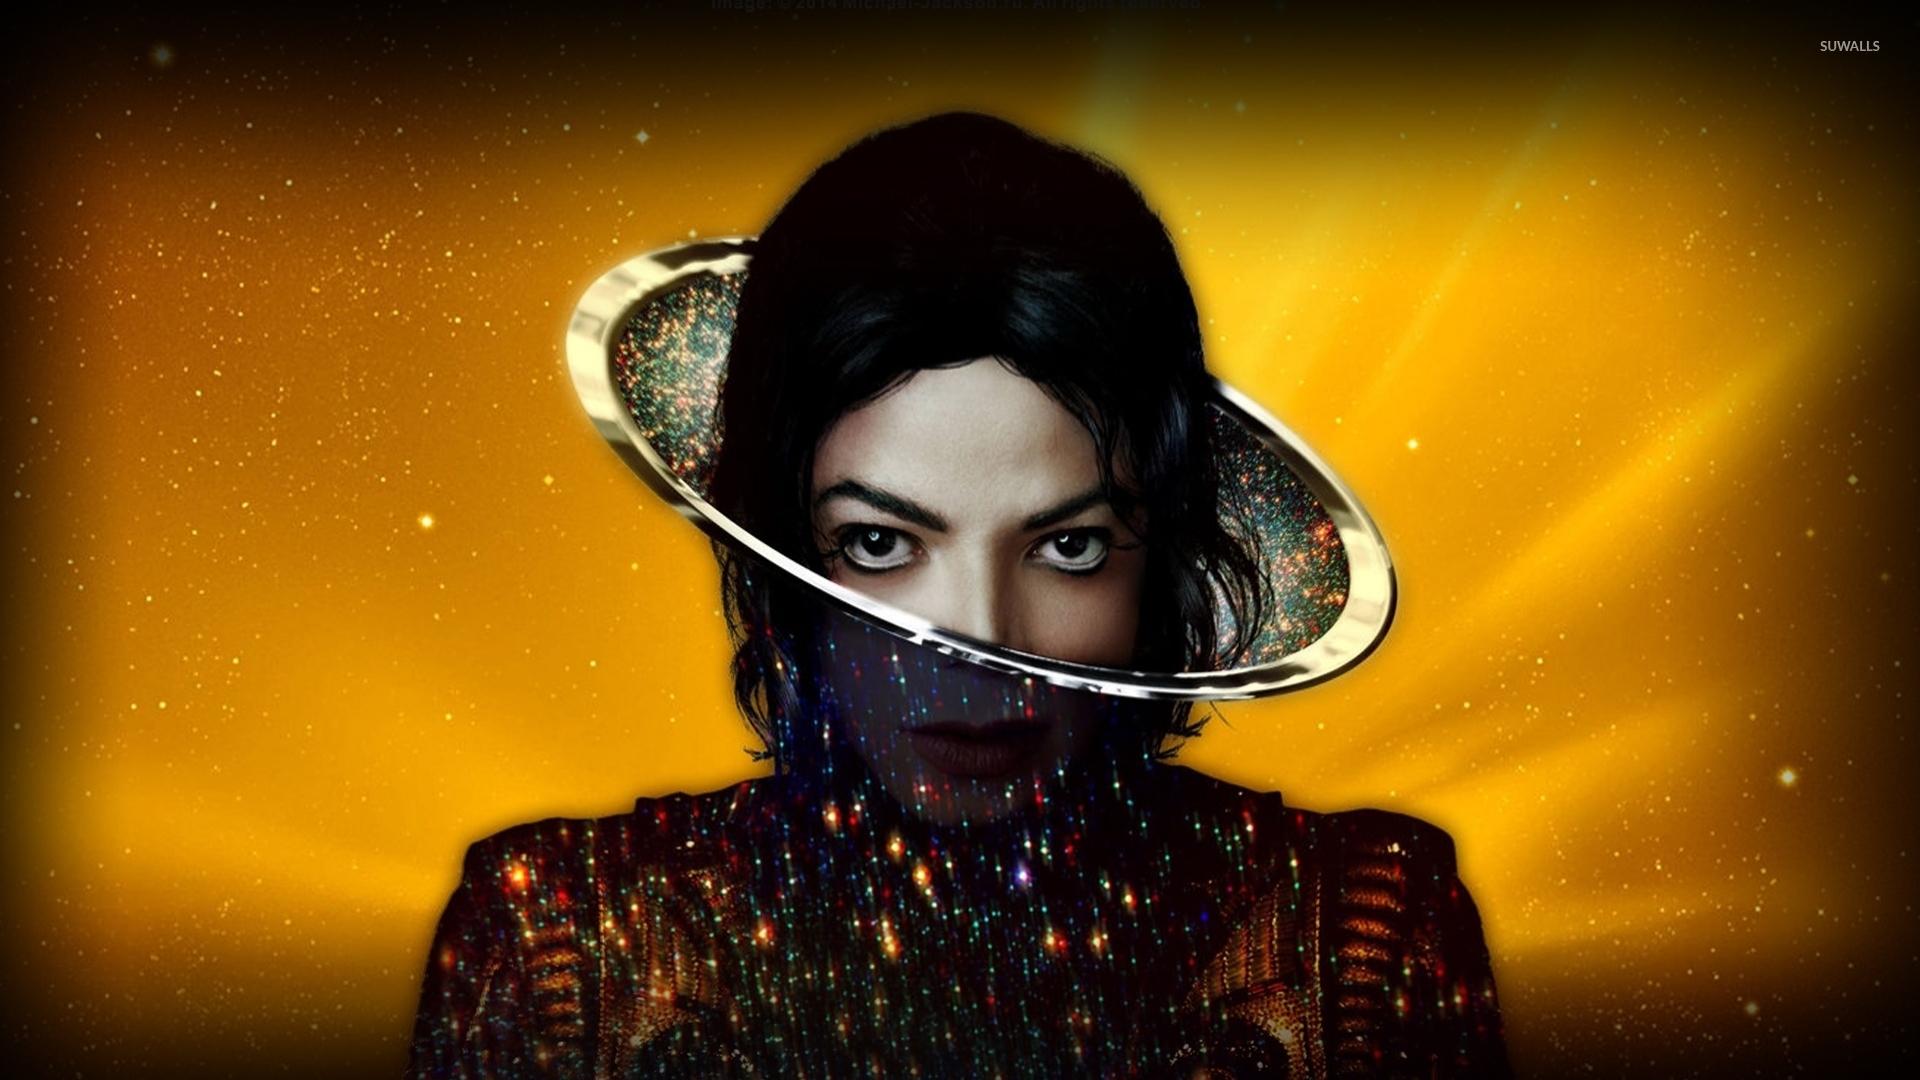 Michael Jackson - 1920x1080 Wallpaper 